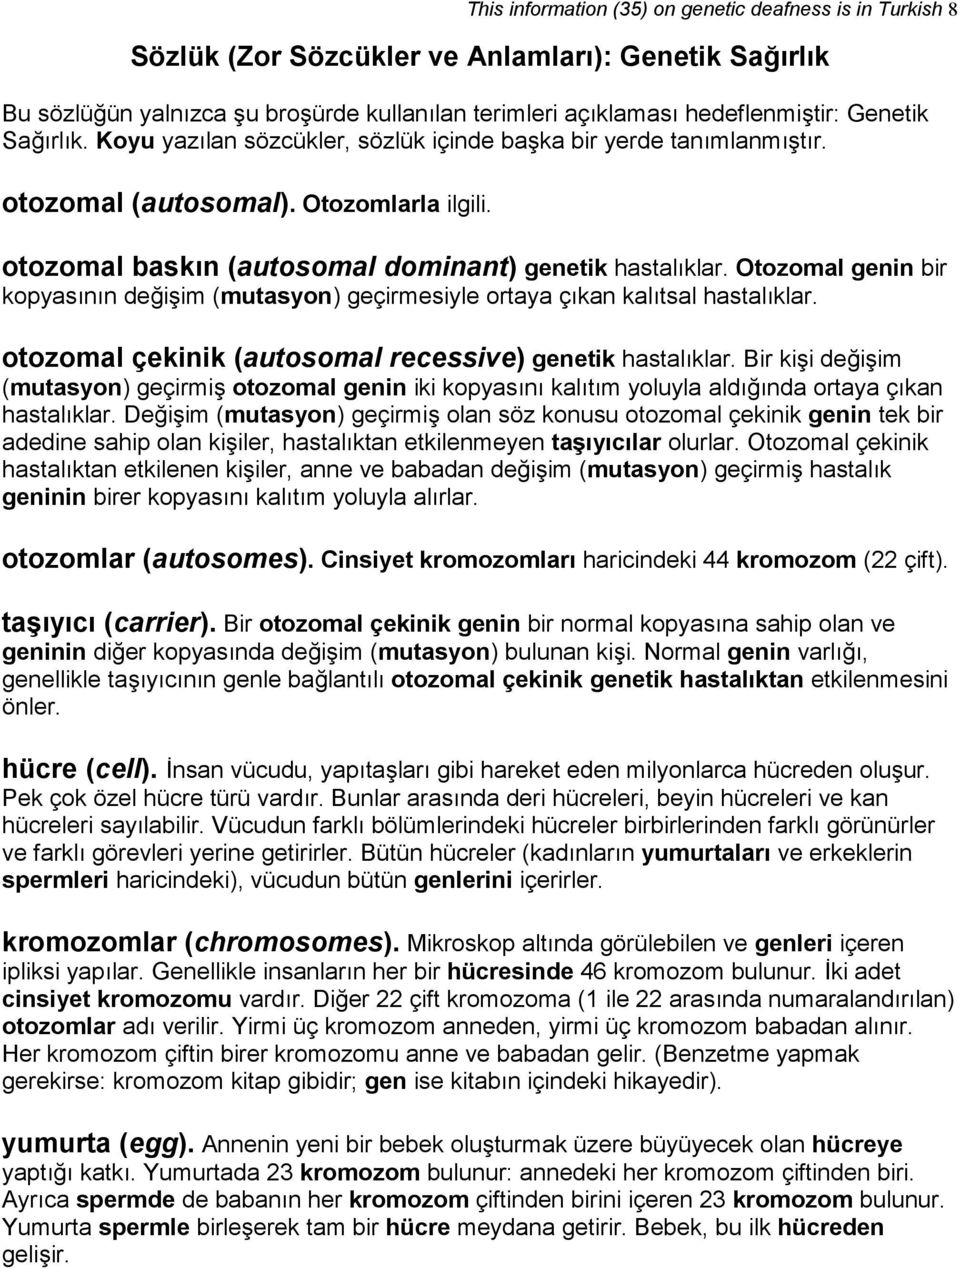 Otozomal genin bir kopyasının değişim (mutasyon) geçirmesiyle ortaya çıkan kalıtsal hastalıklar. otozomal çekinik (autosomal recessive) genetik hastalıklar.